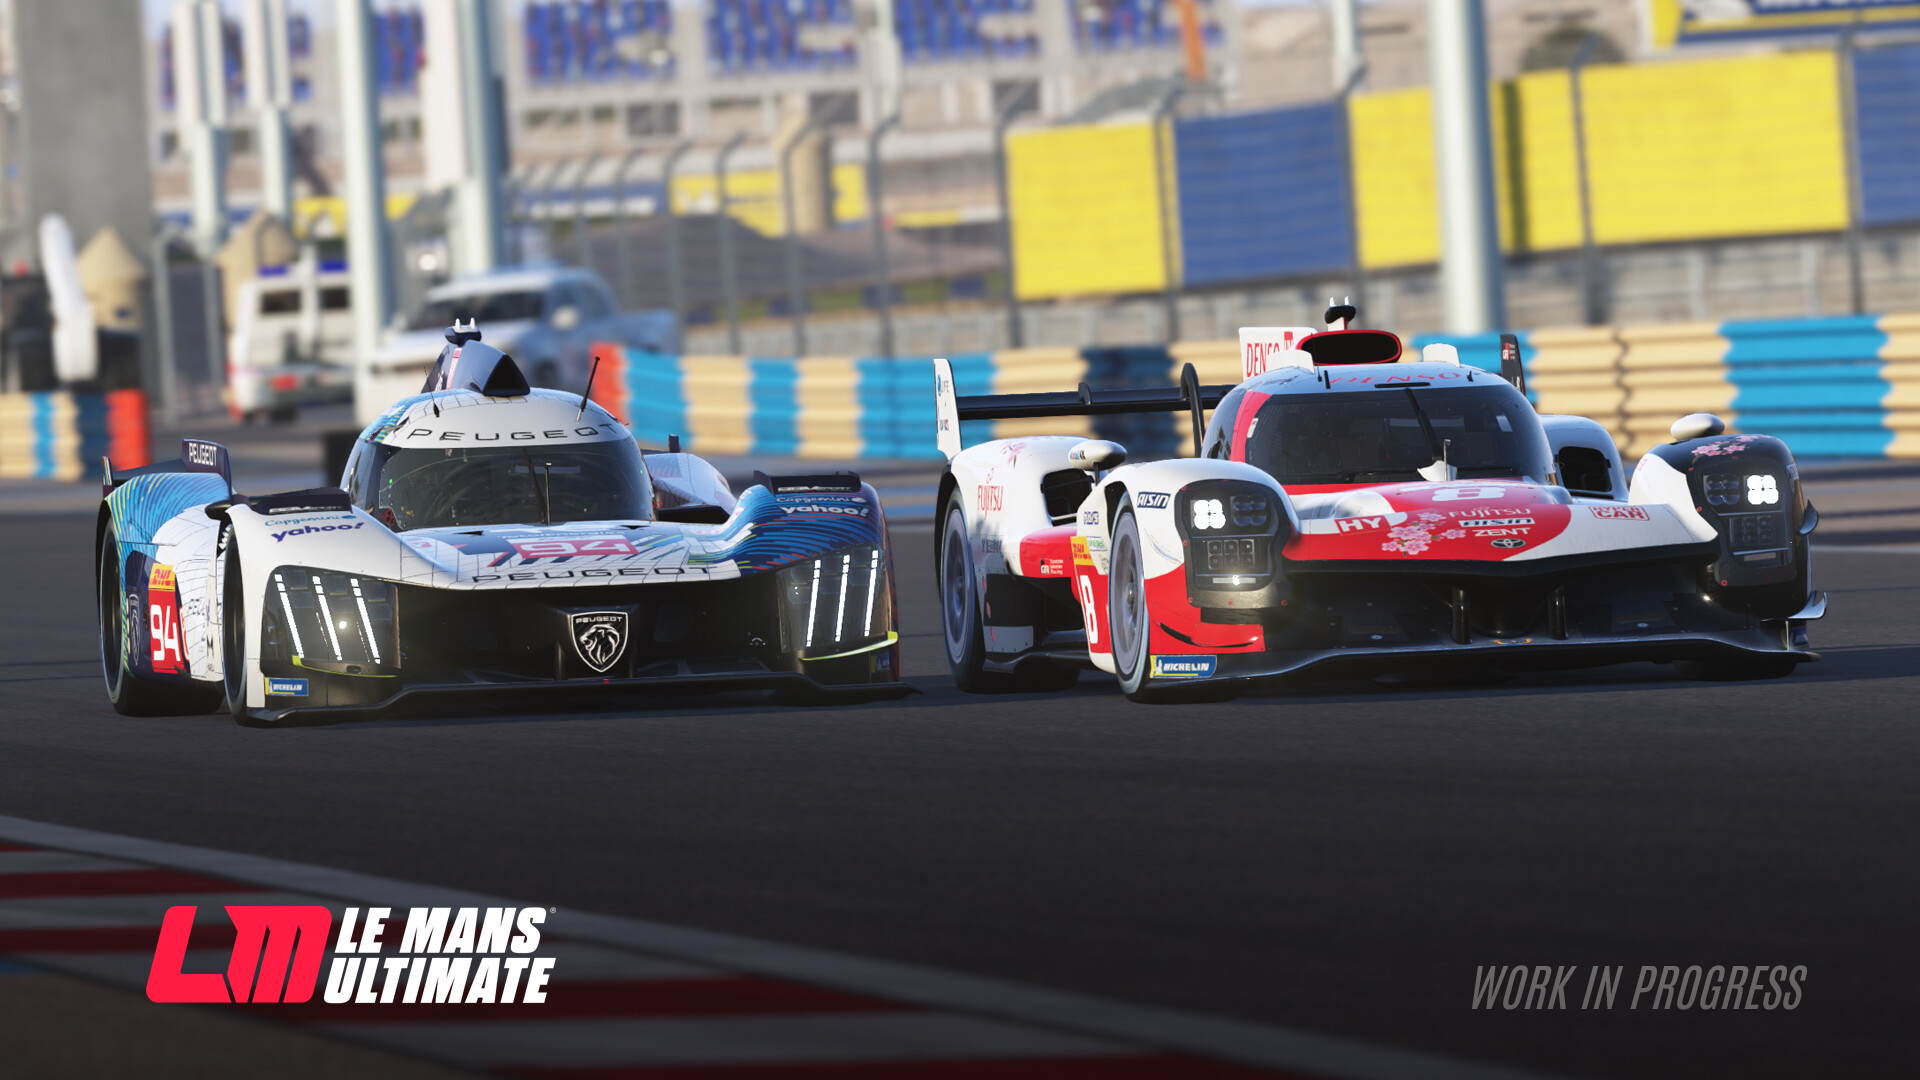 勒芒终极赛|官方英文|Le Mans Ultimate插图5